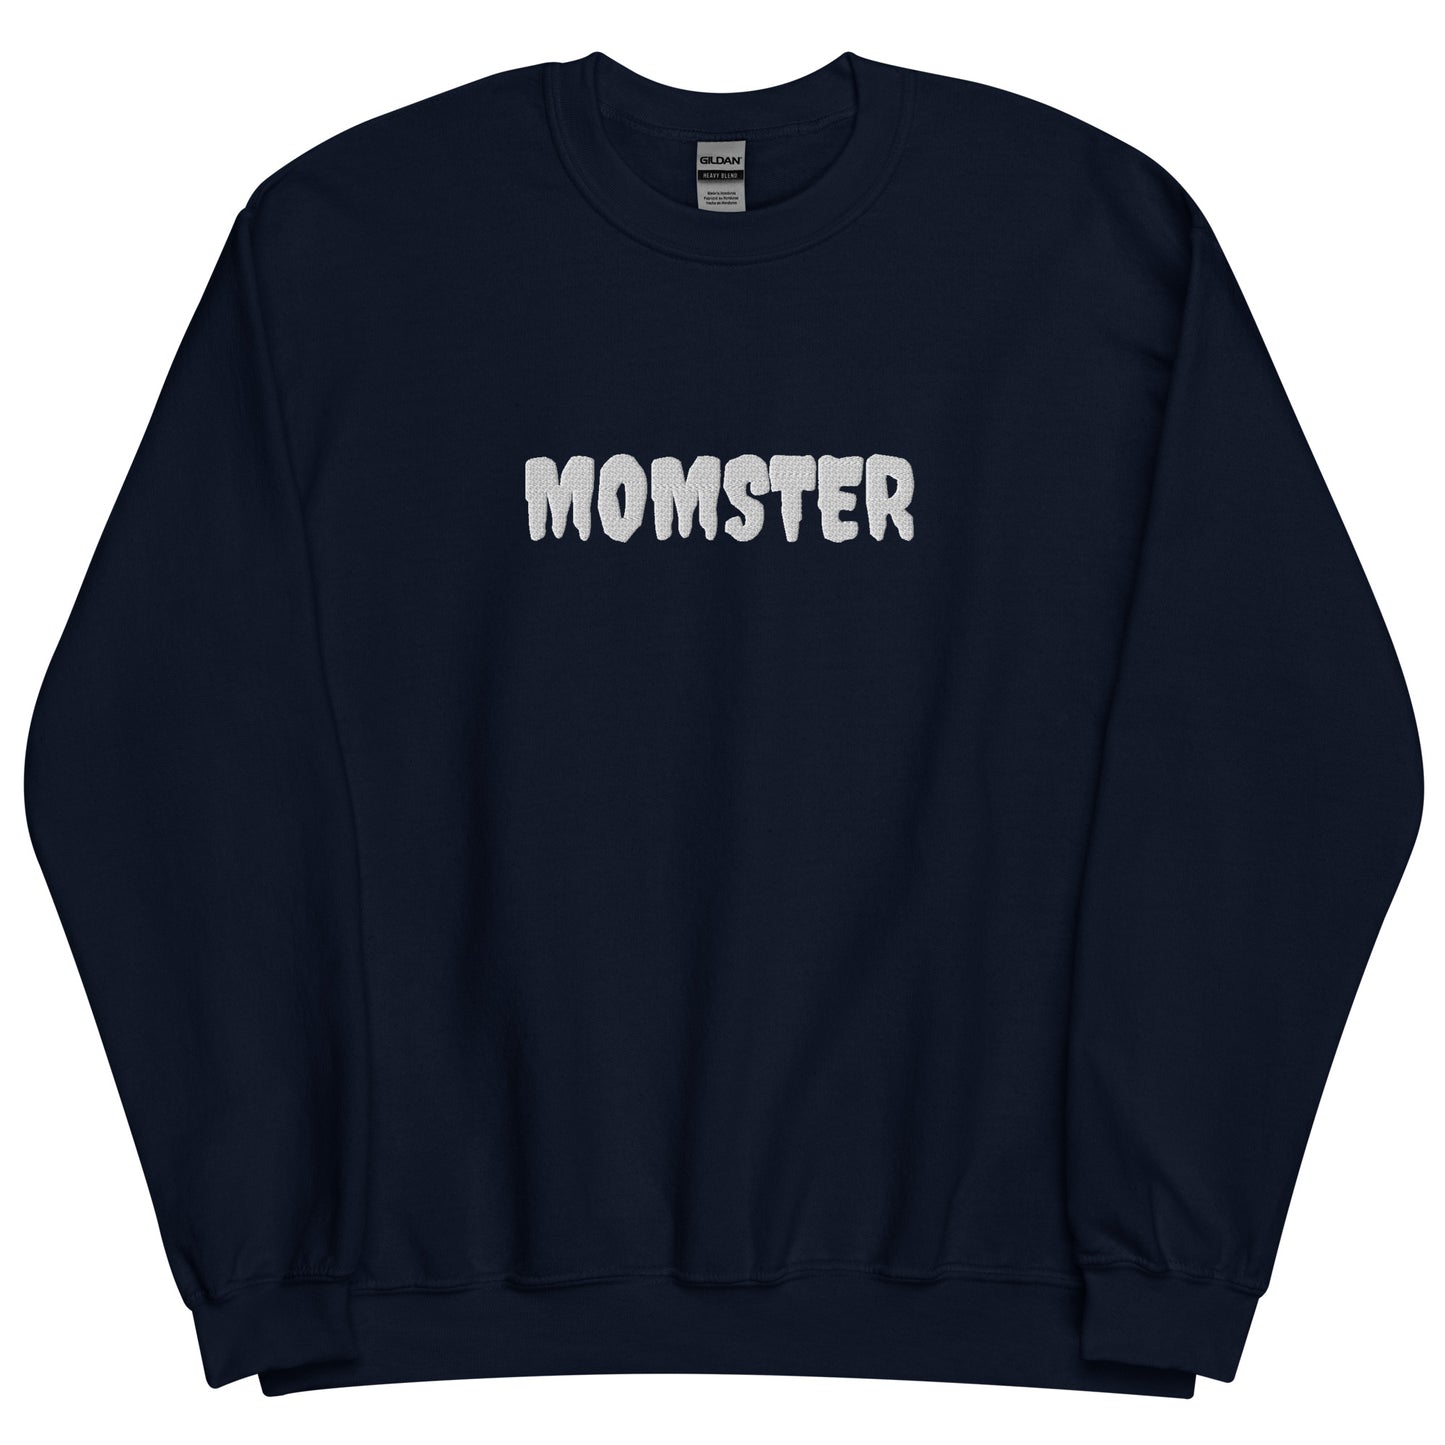 MOMSTER Sweatshirt